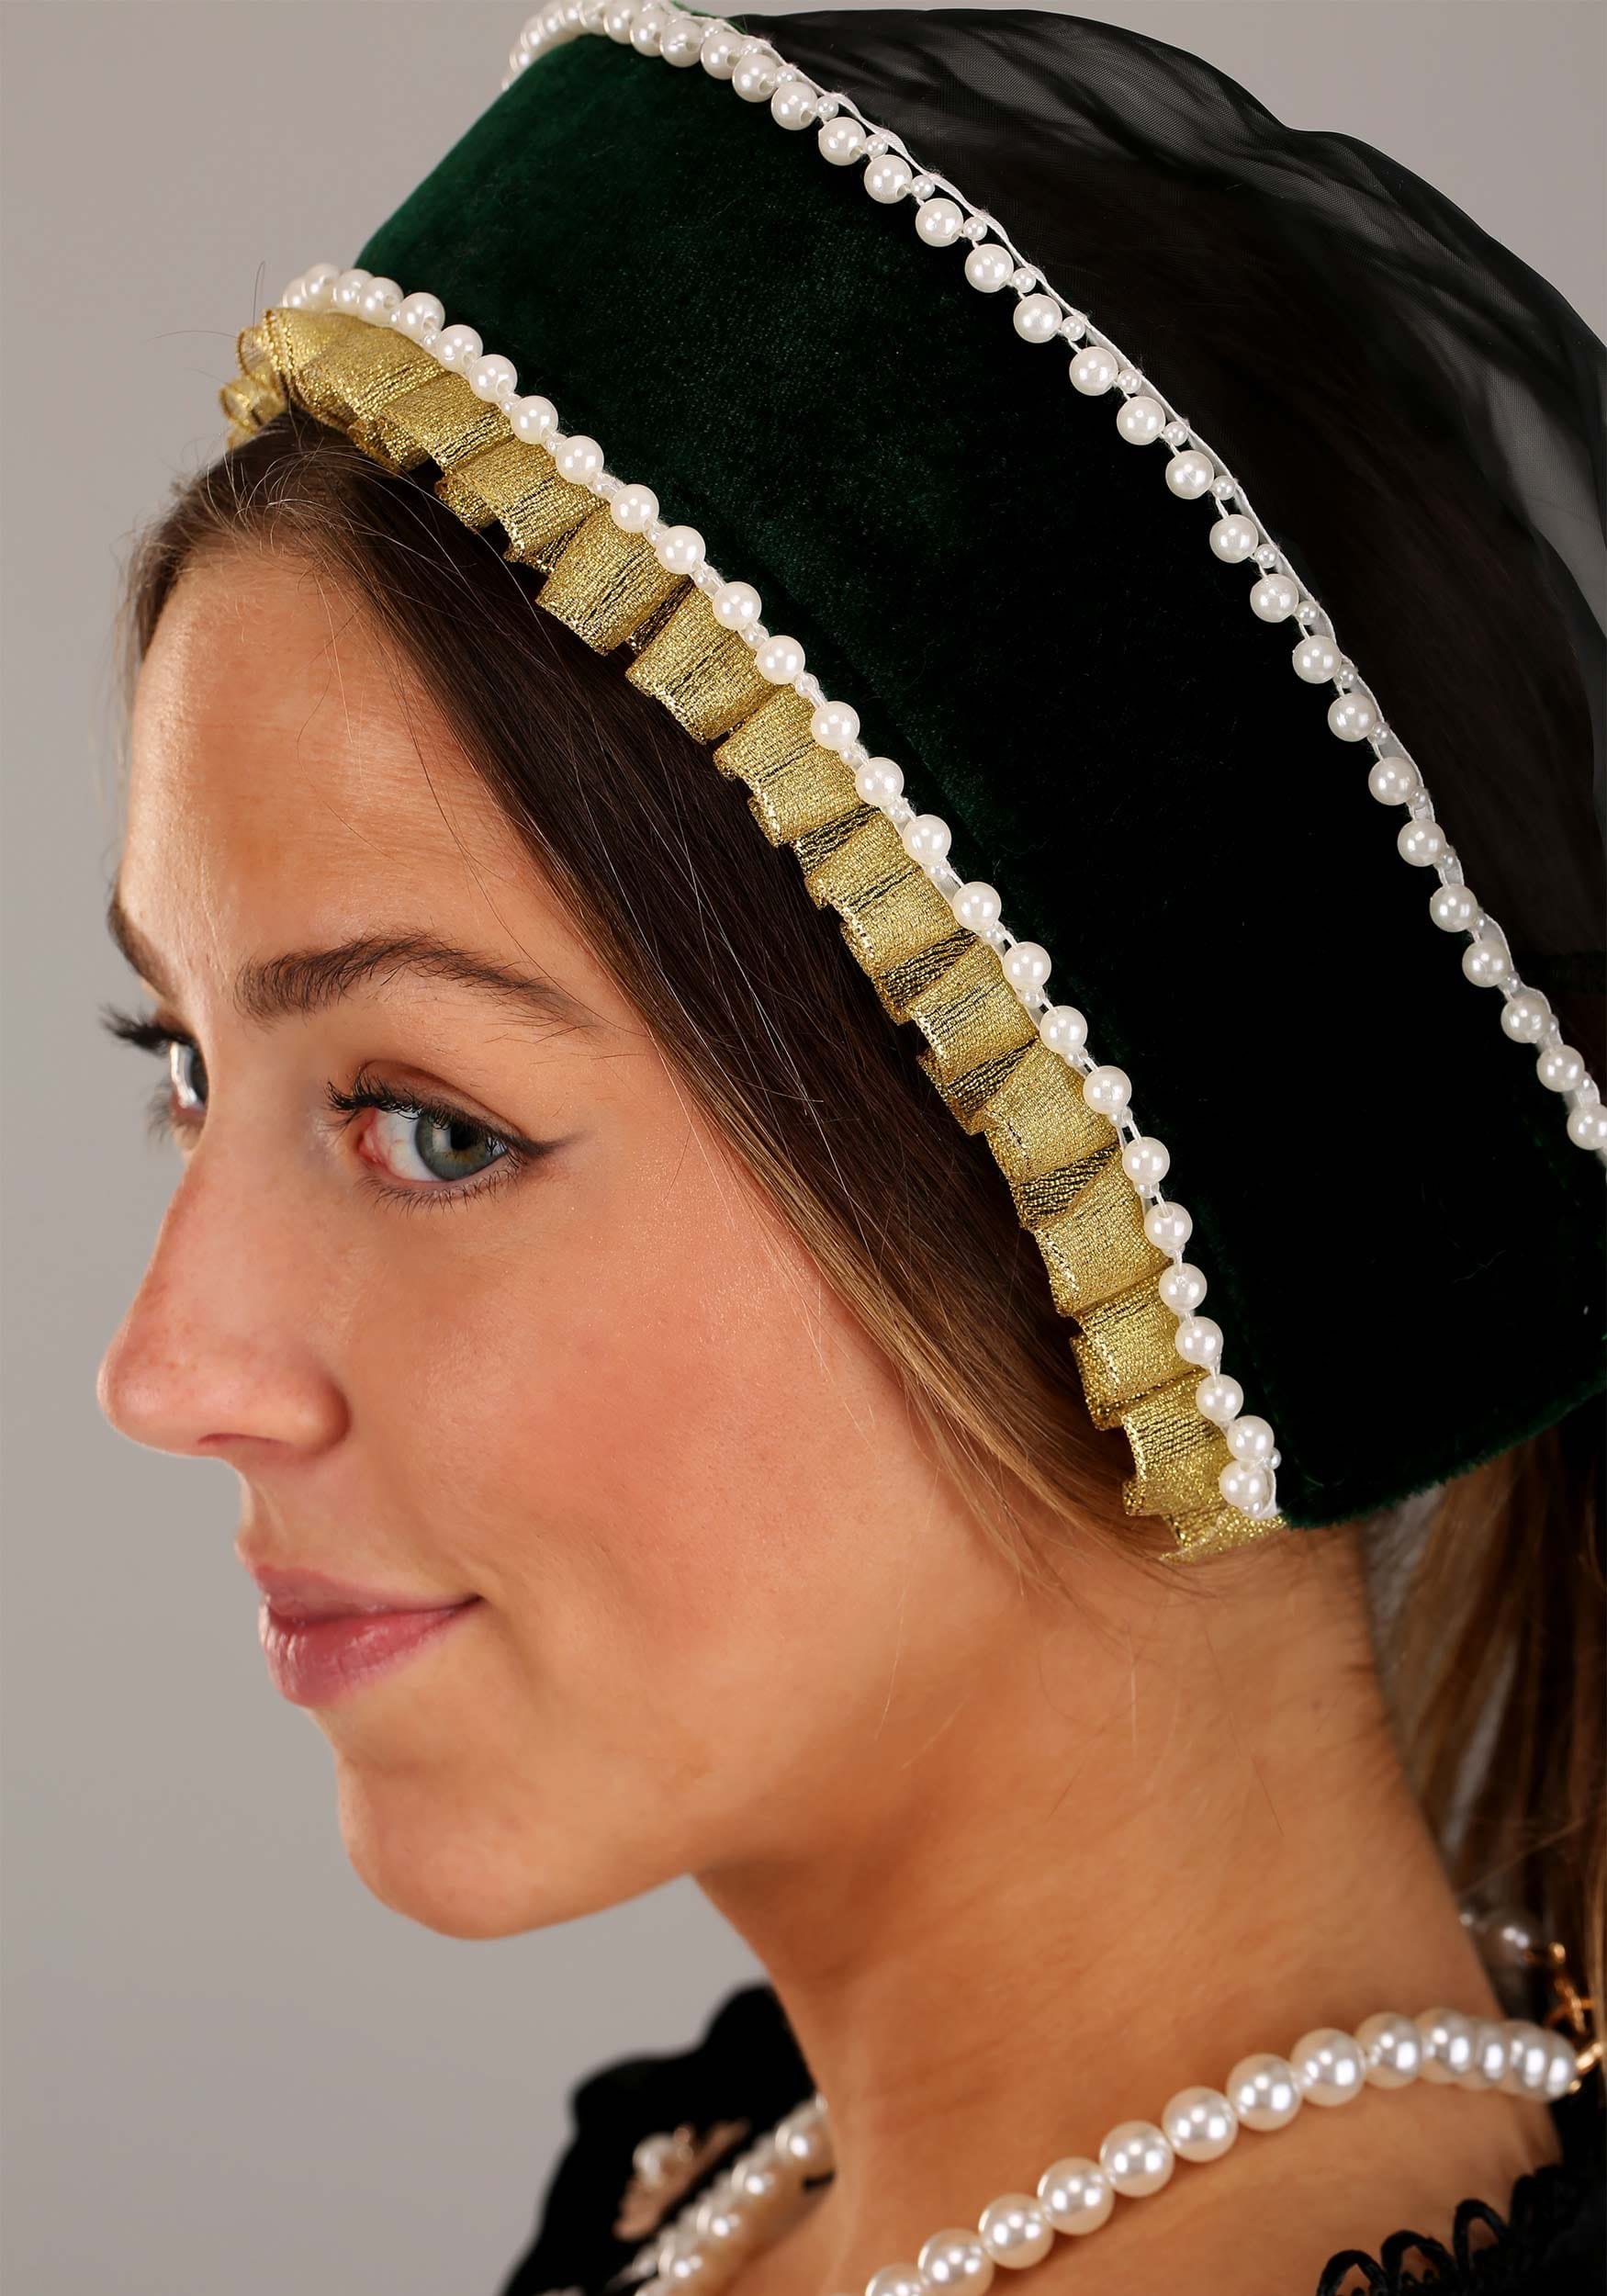 Fancy Dress Costume Kit - Queen Anne Boleyn